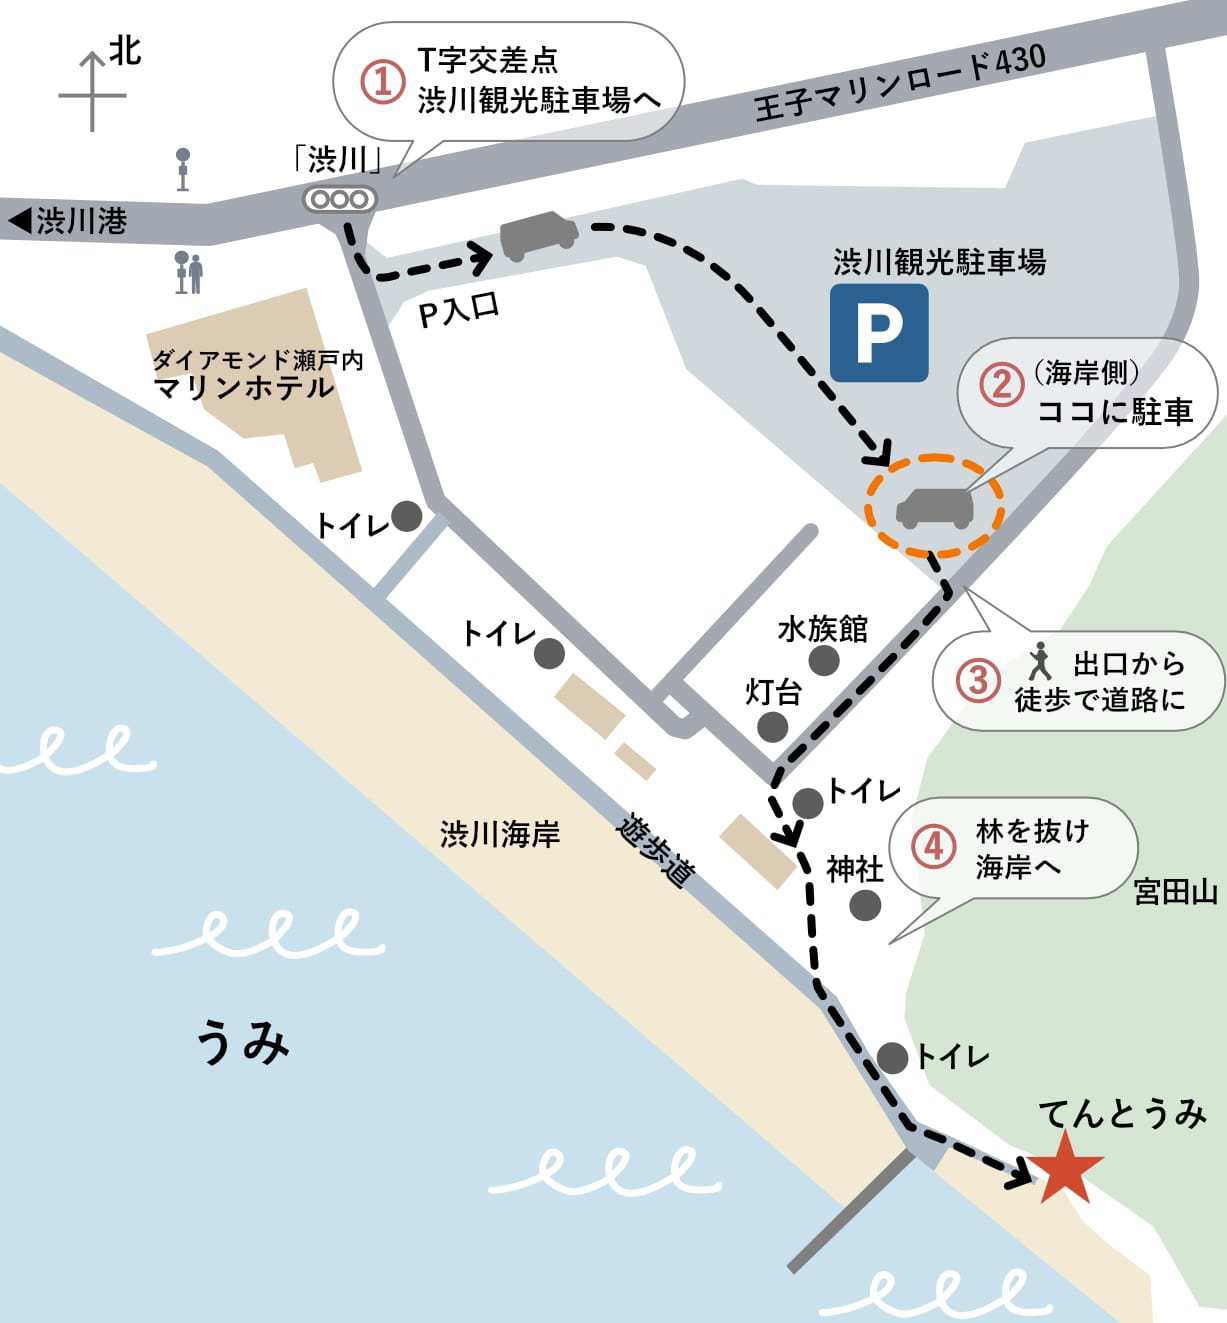 車は「渋川観光駐車場」をご利用ください。施設まで徒歩3分。チェックアウトの際に無料券をお渡しします